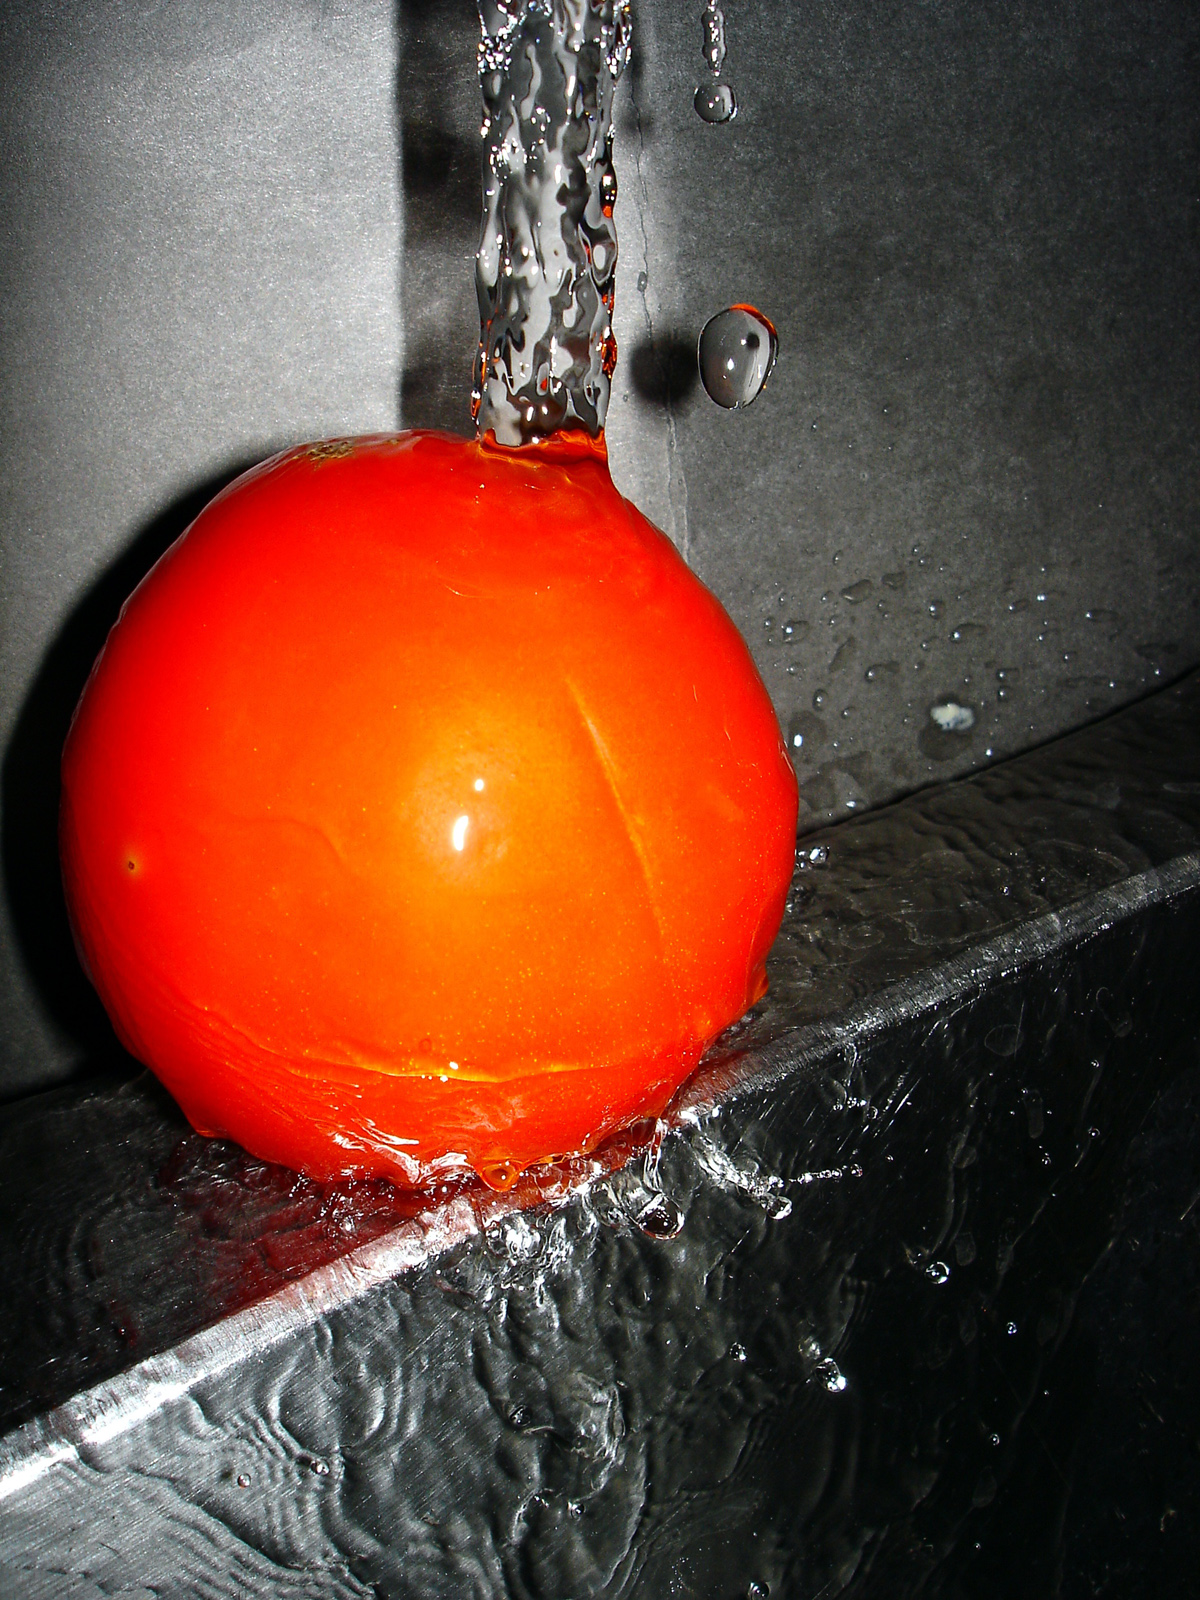 Tomato, Bspo06, B&w, Red, Splash, HQ Photo